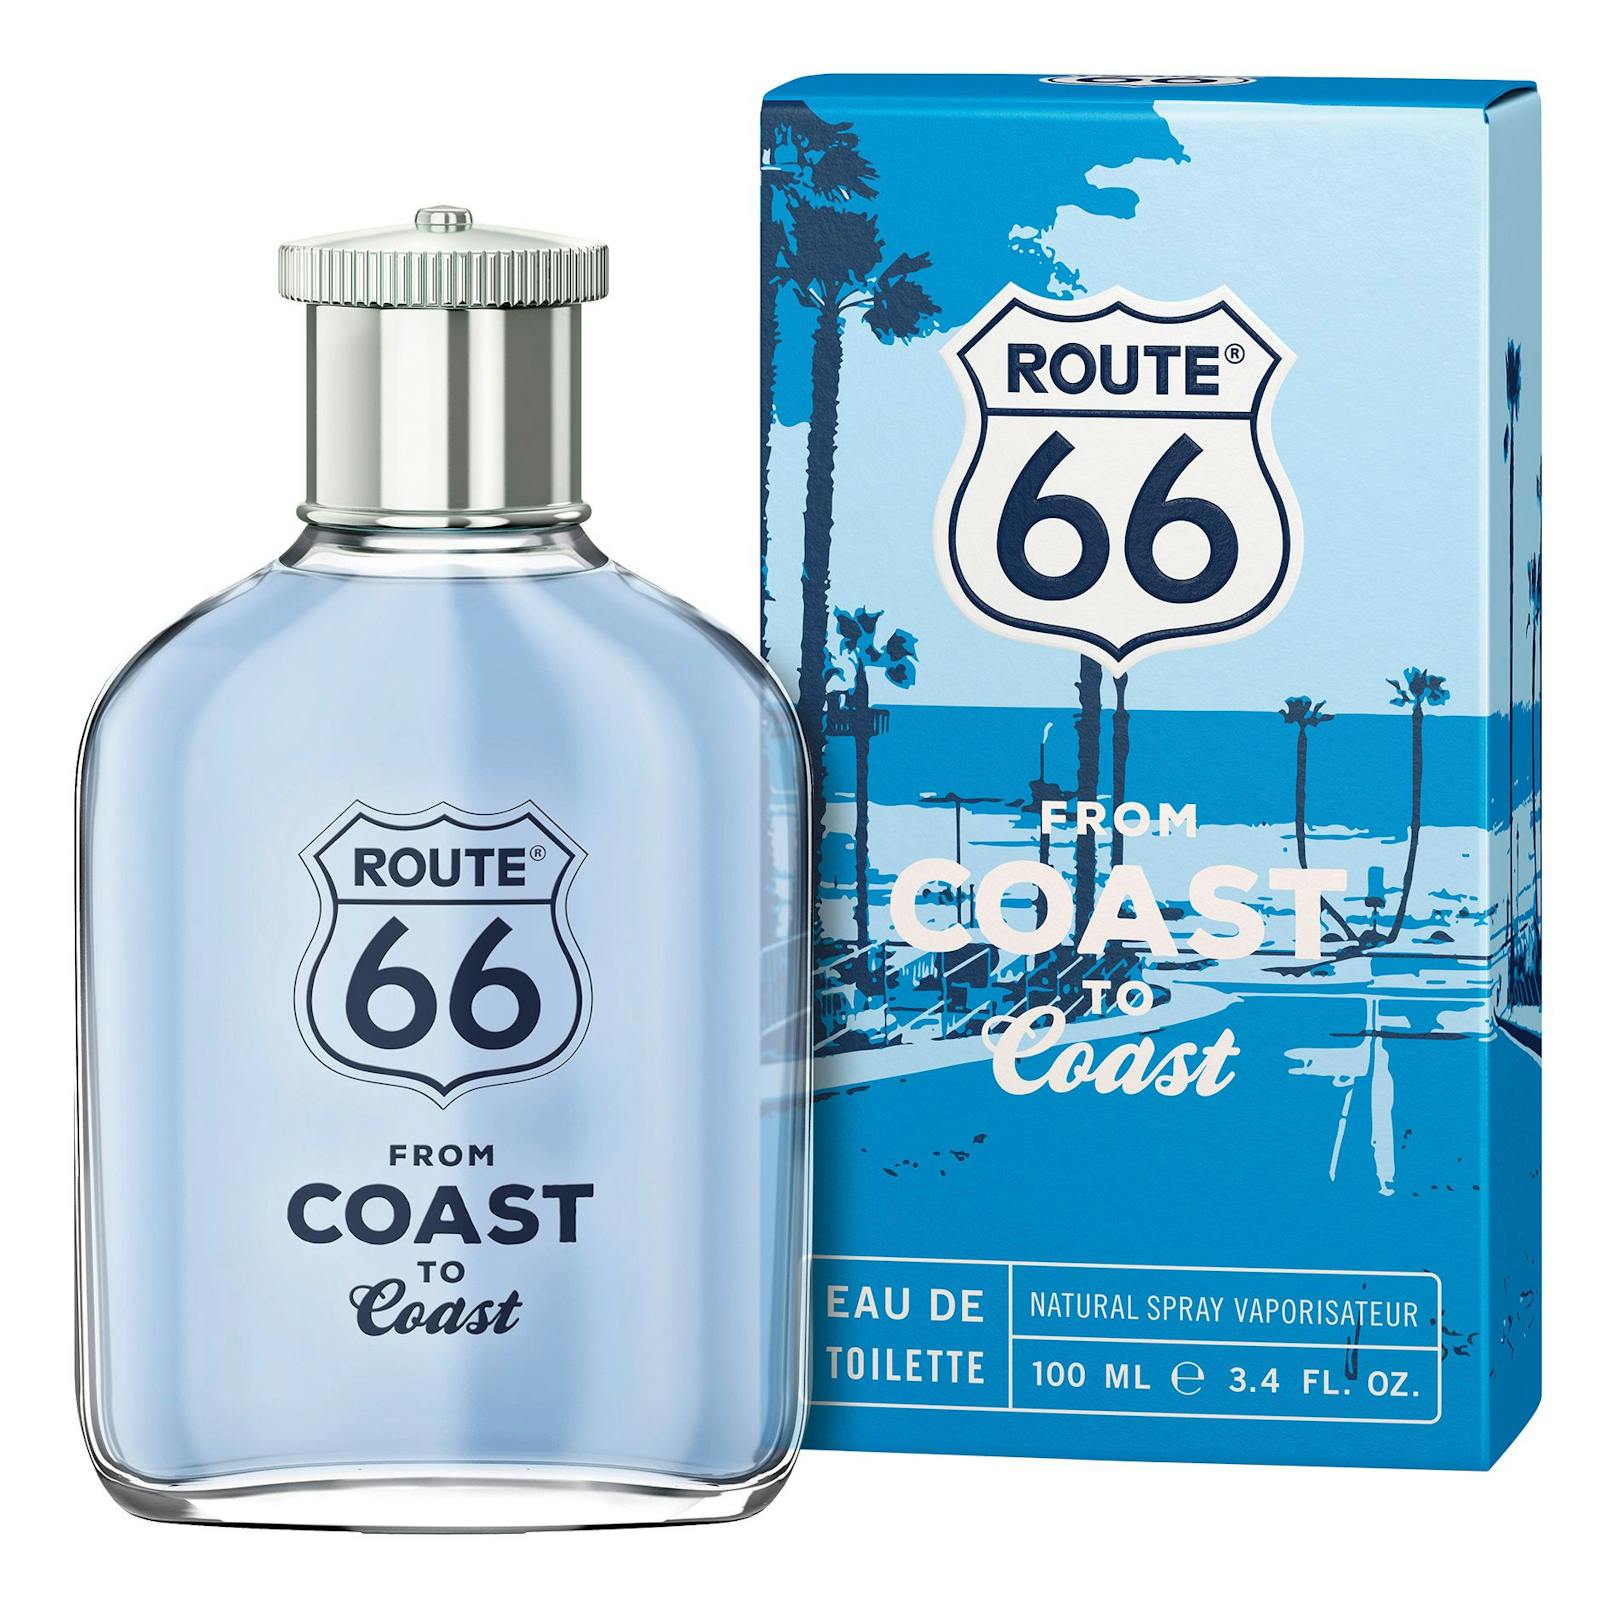 Route 66 "Coast To Coast"